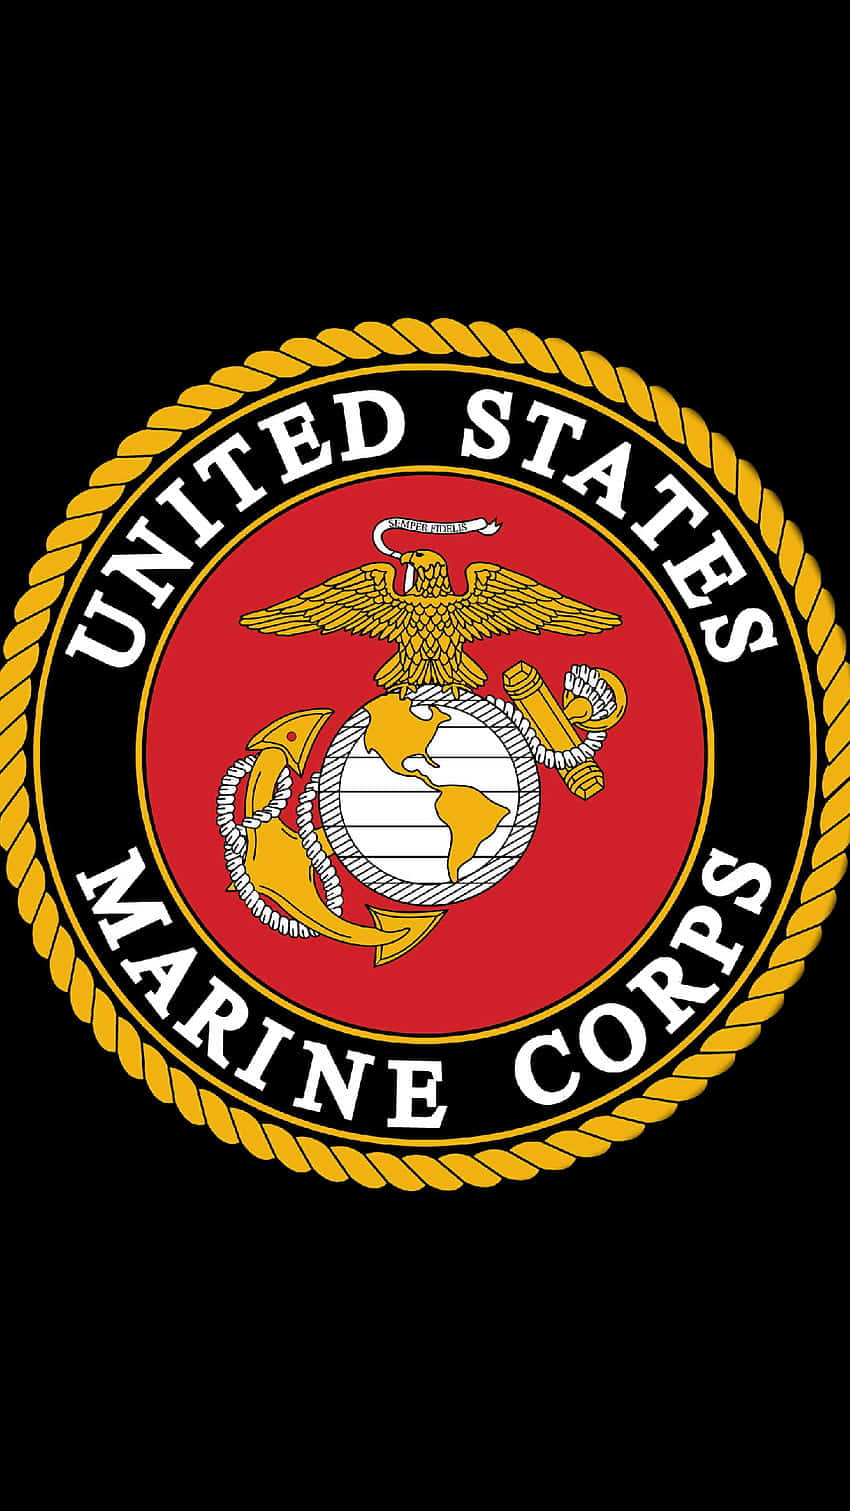 Vis din stolthed og styrke med US Marine Corps iPhone tapet! Wallpaper